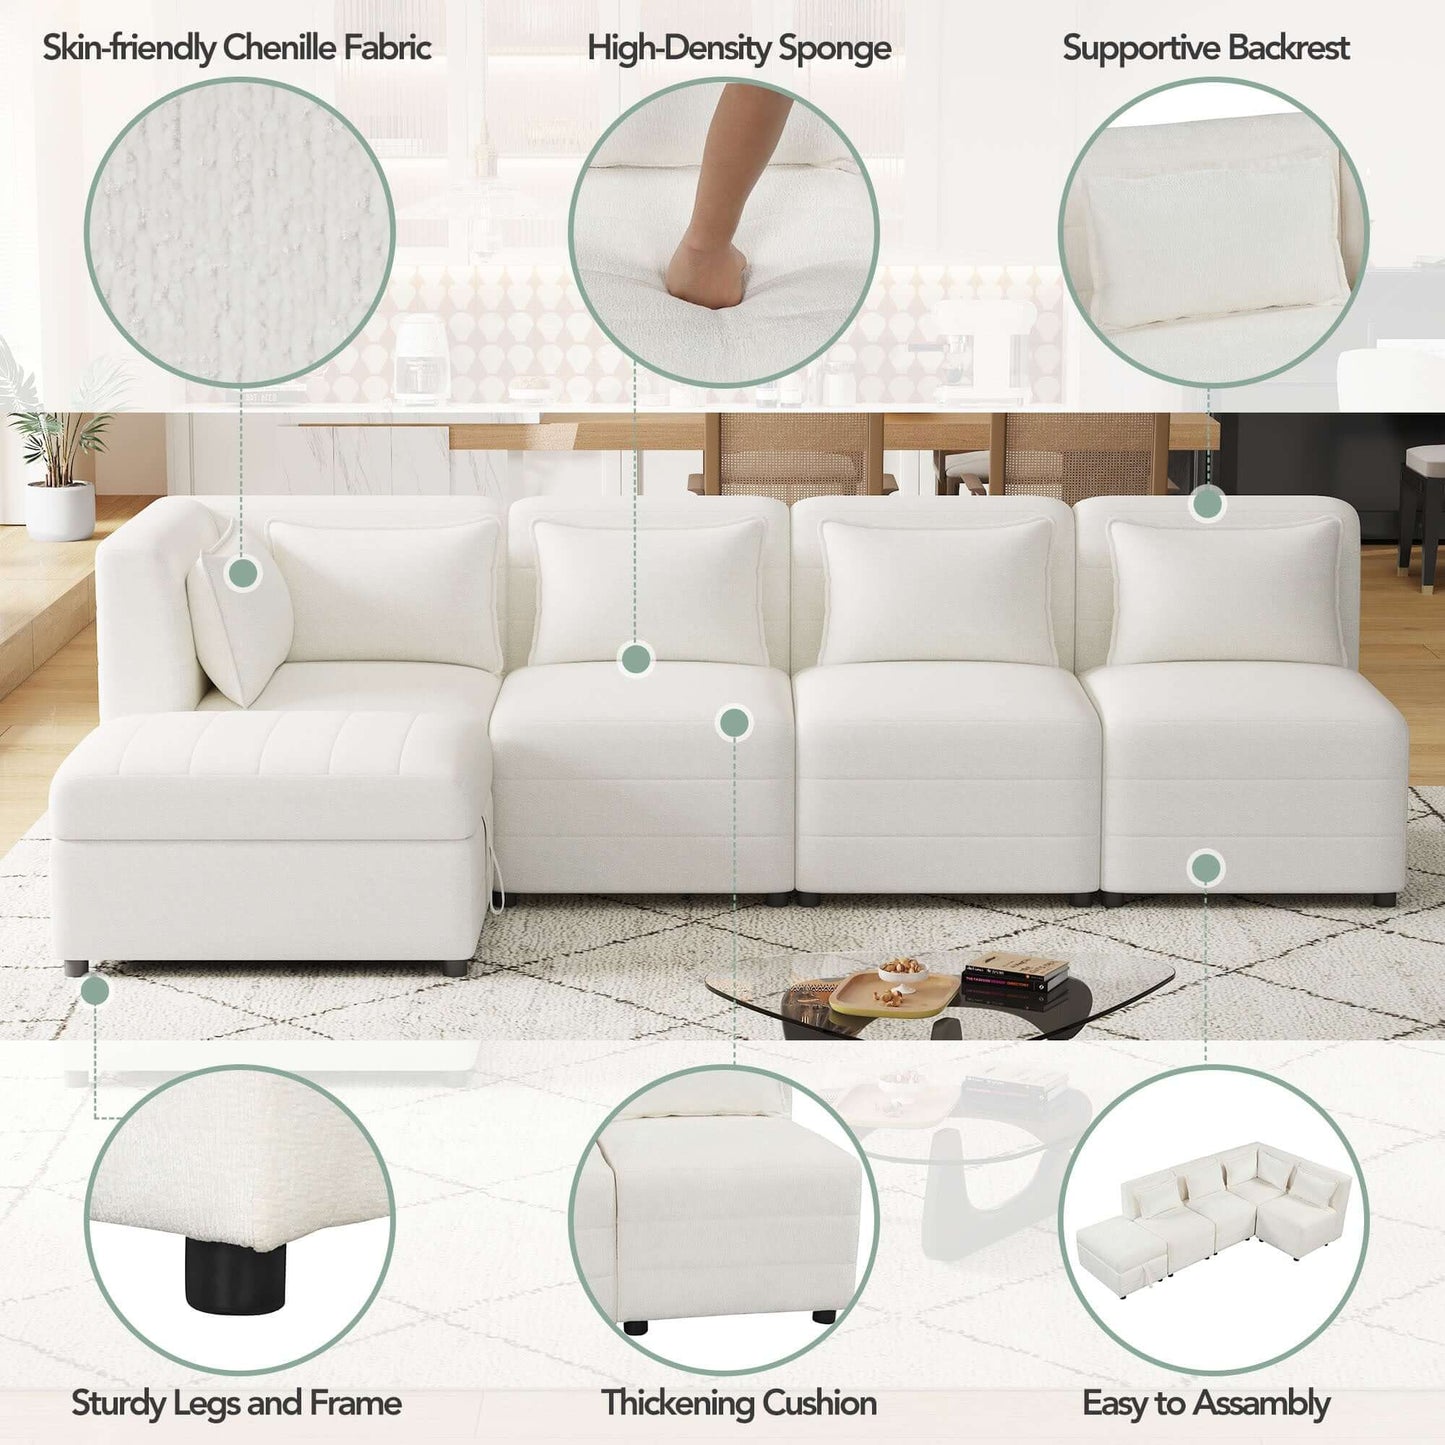 Modular 5pc Sectional Sofa with Storage Ottoman & 5 Throw Pillows - Revel Sofa 